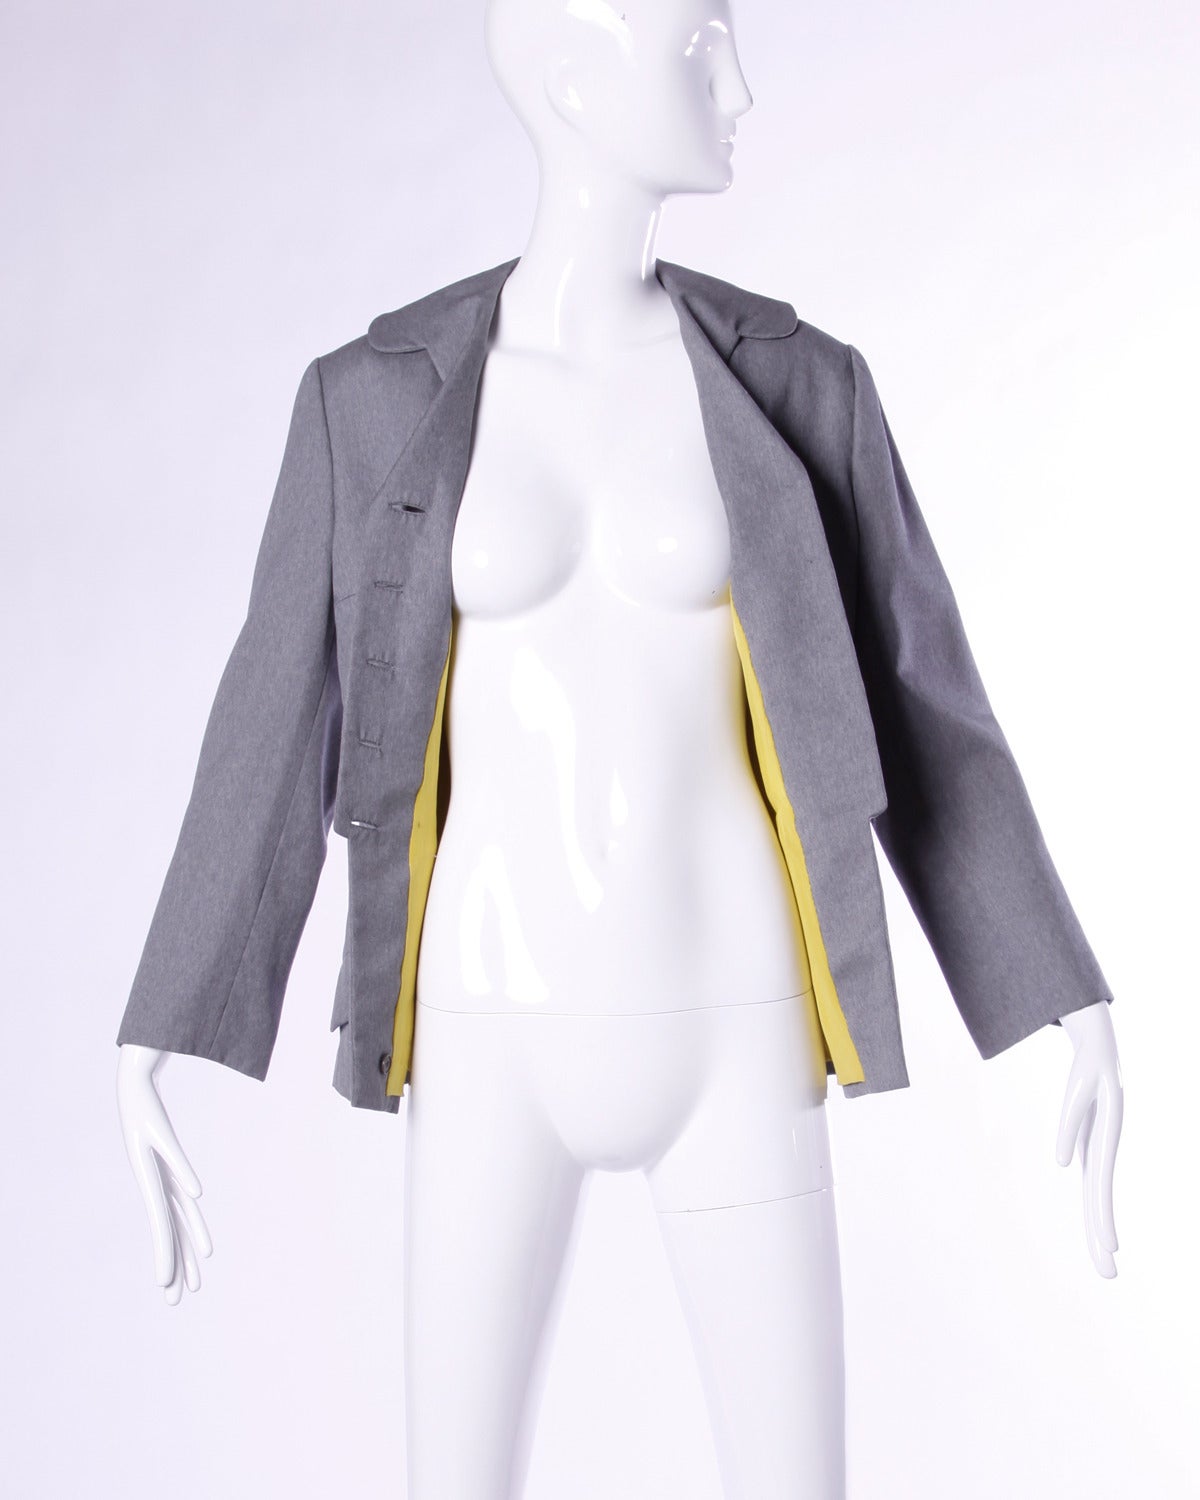 Absolut spektakuläre Irene Lentz Vintage-Jacke aus den 1940er Jahren. Unverfälschte Couture-Schneiderei mit Knöpfen, die zur Mitte der Jacke hin kleiner werden. Schönes gelbes Futter. Ein sehr seltenes Stück!

Einzelheiten:

Vollständig